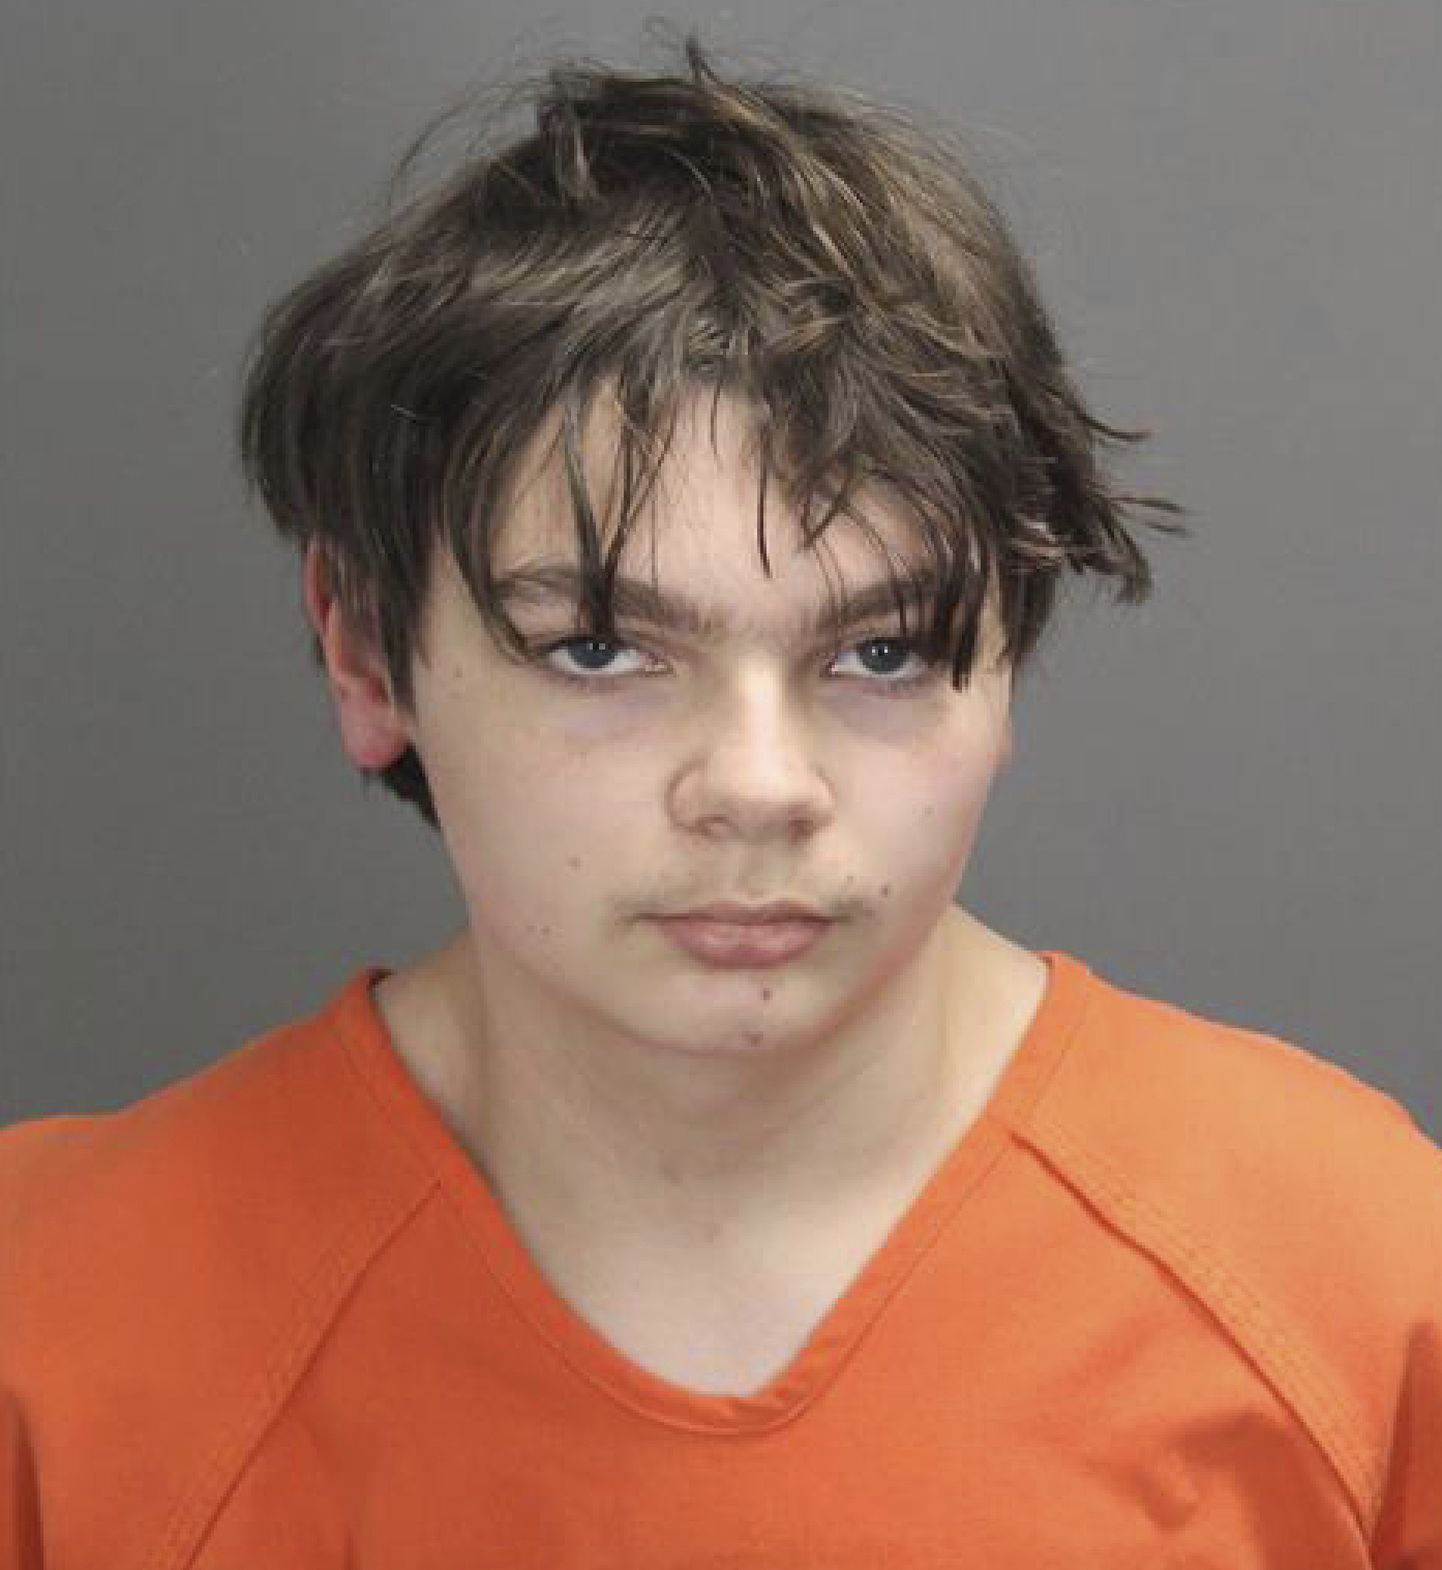 Mõrva- ja terrorismisüüdistuse saanud 15-aastane Ethan Crumbley.